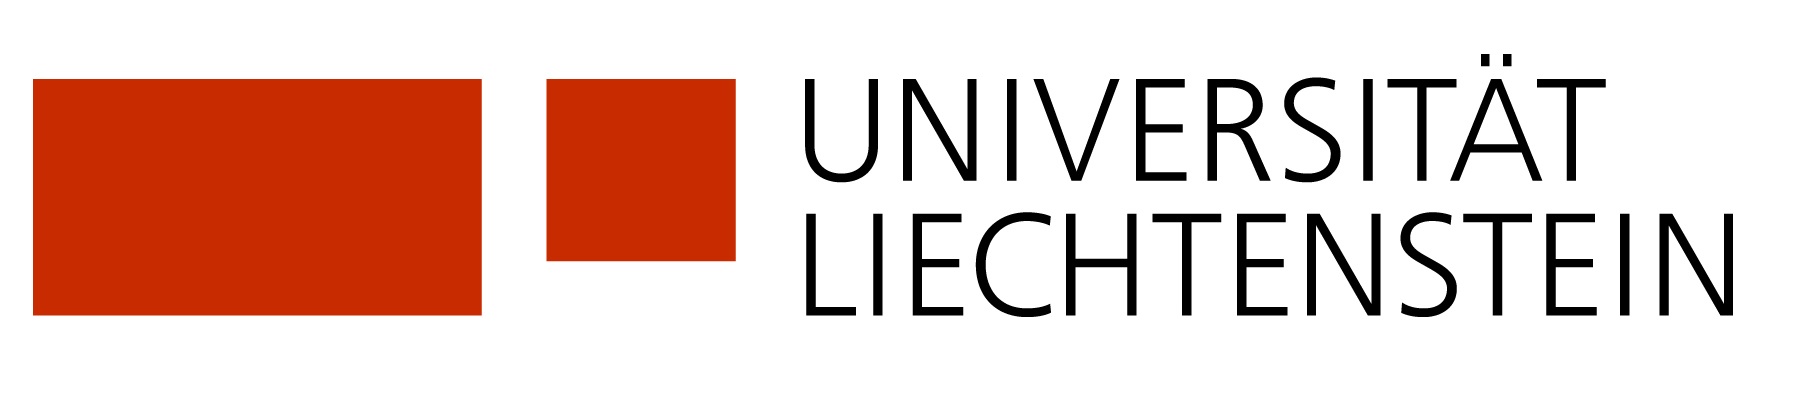 Logo Universität Liechtenstein